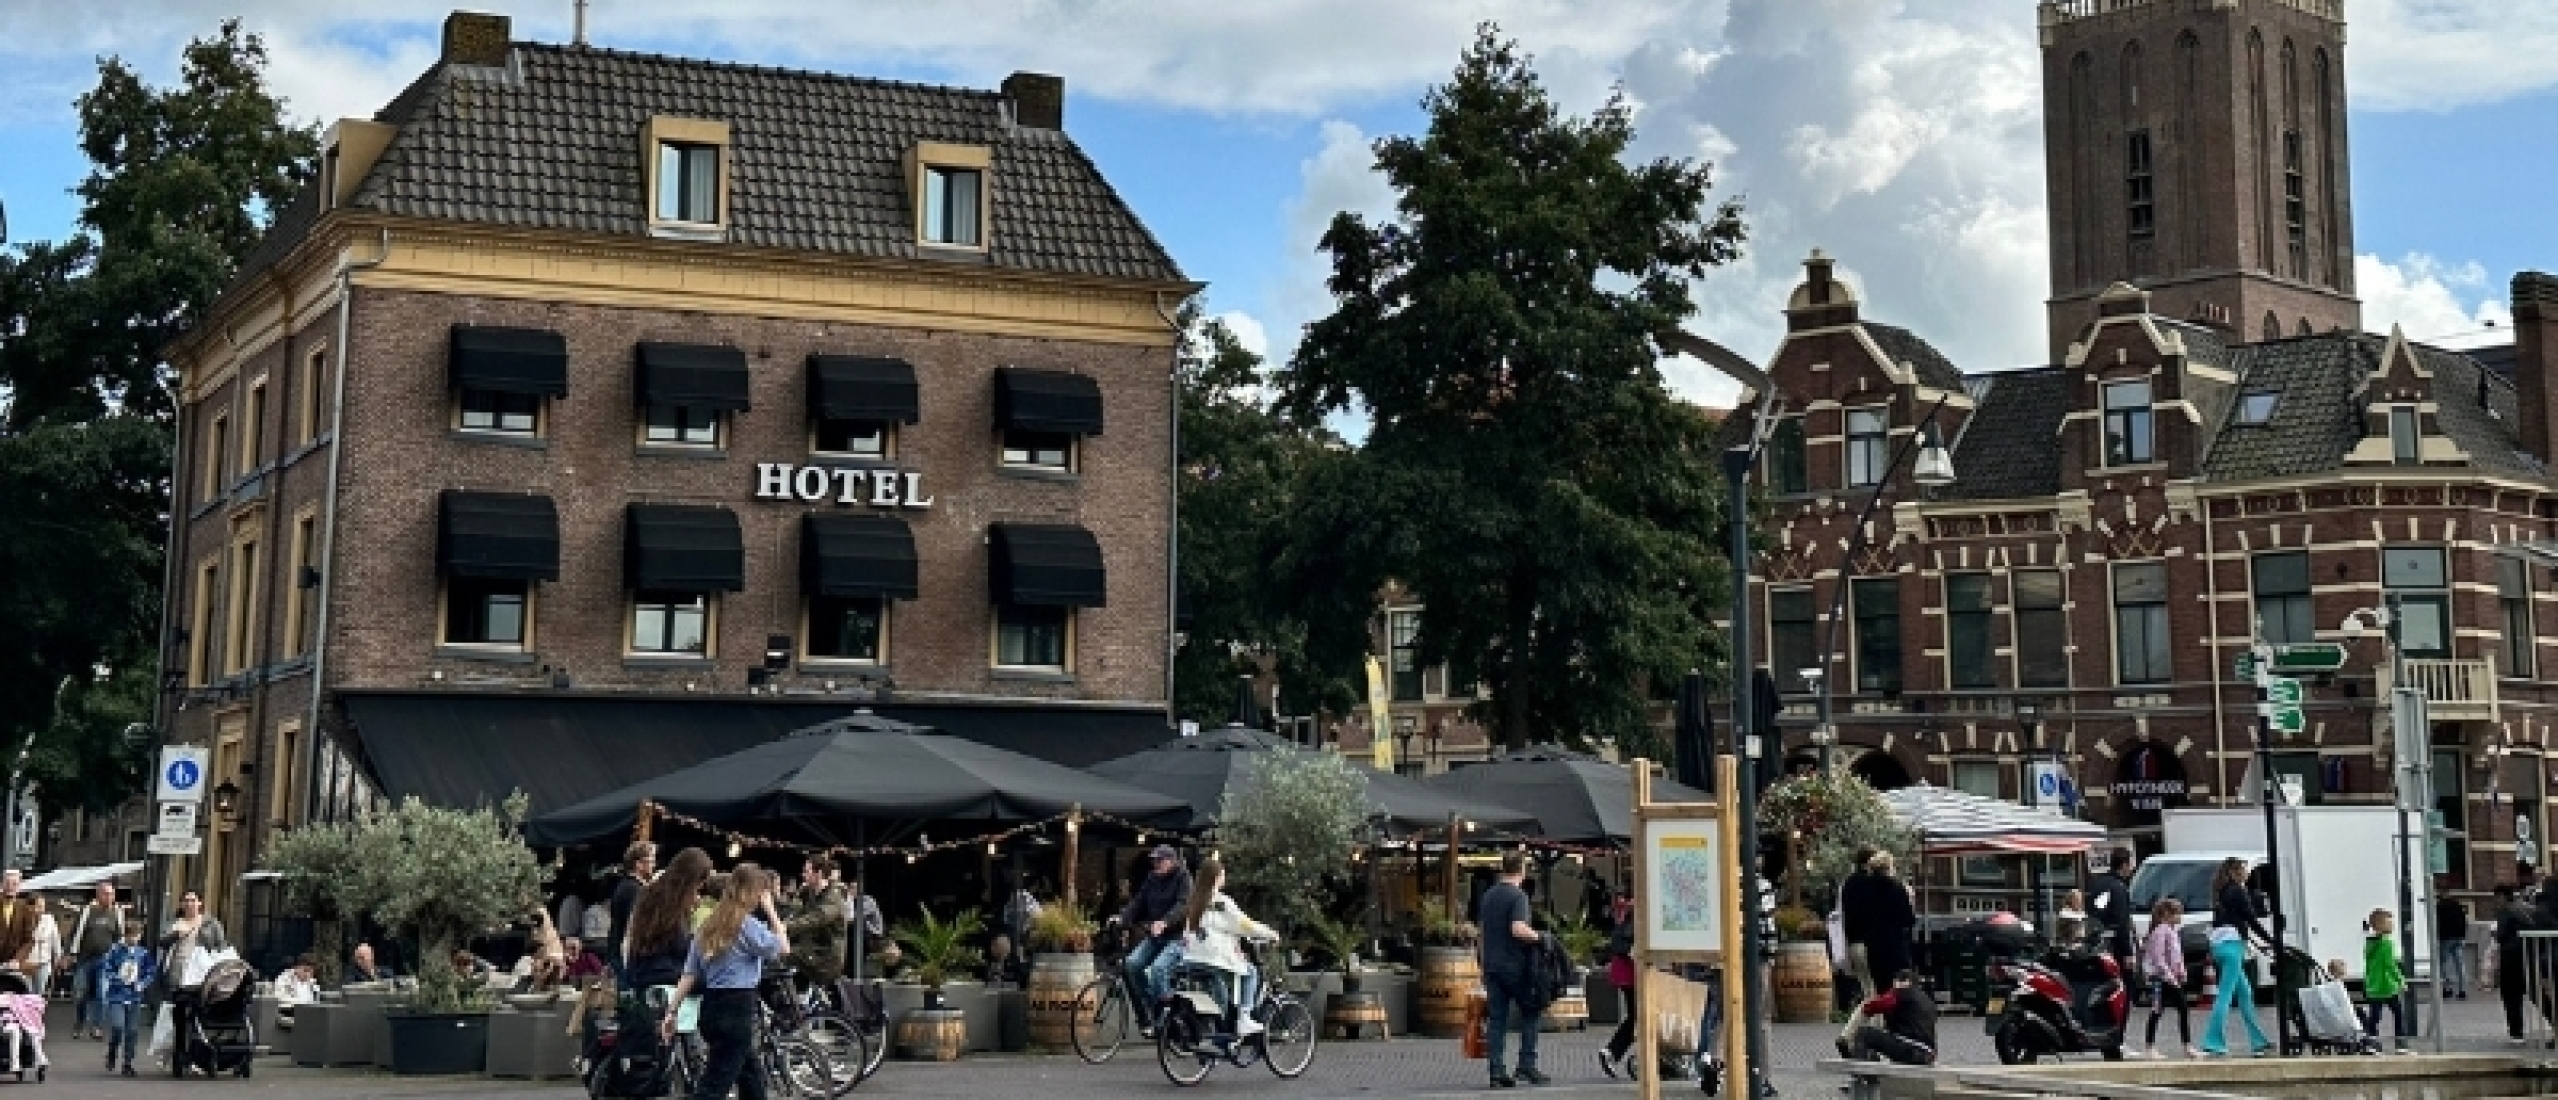 Zwolle het mooiste Hanzestadje van Nederland